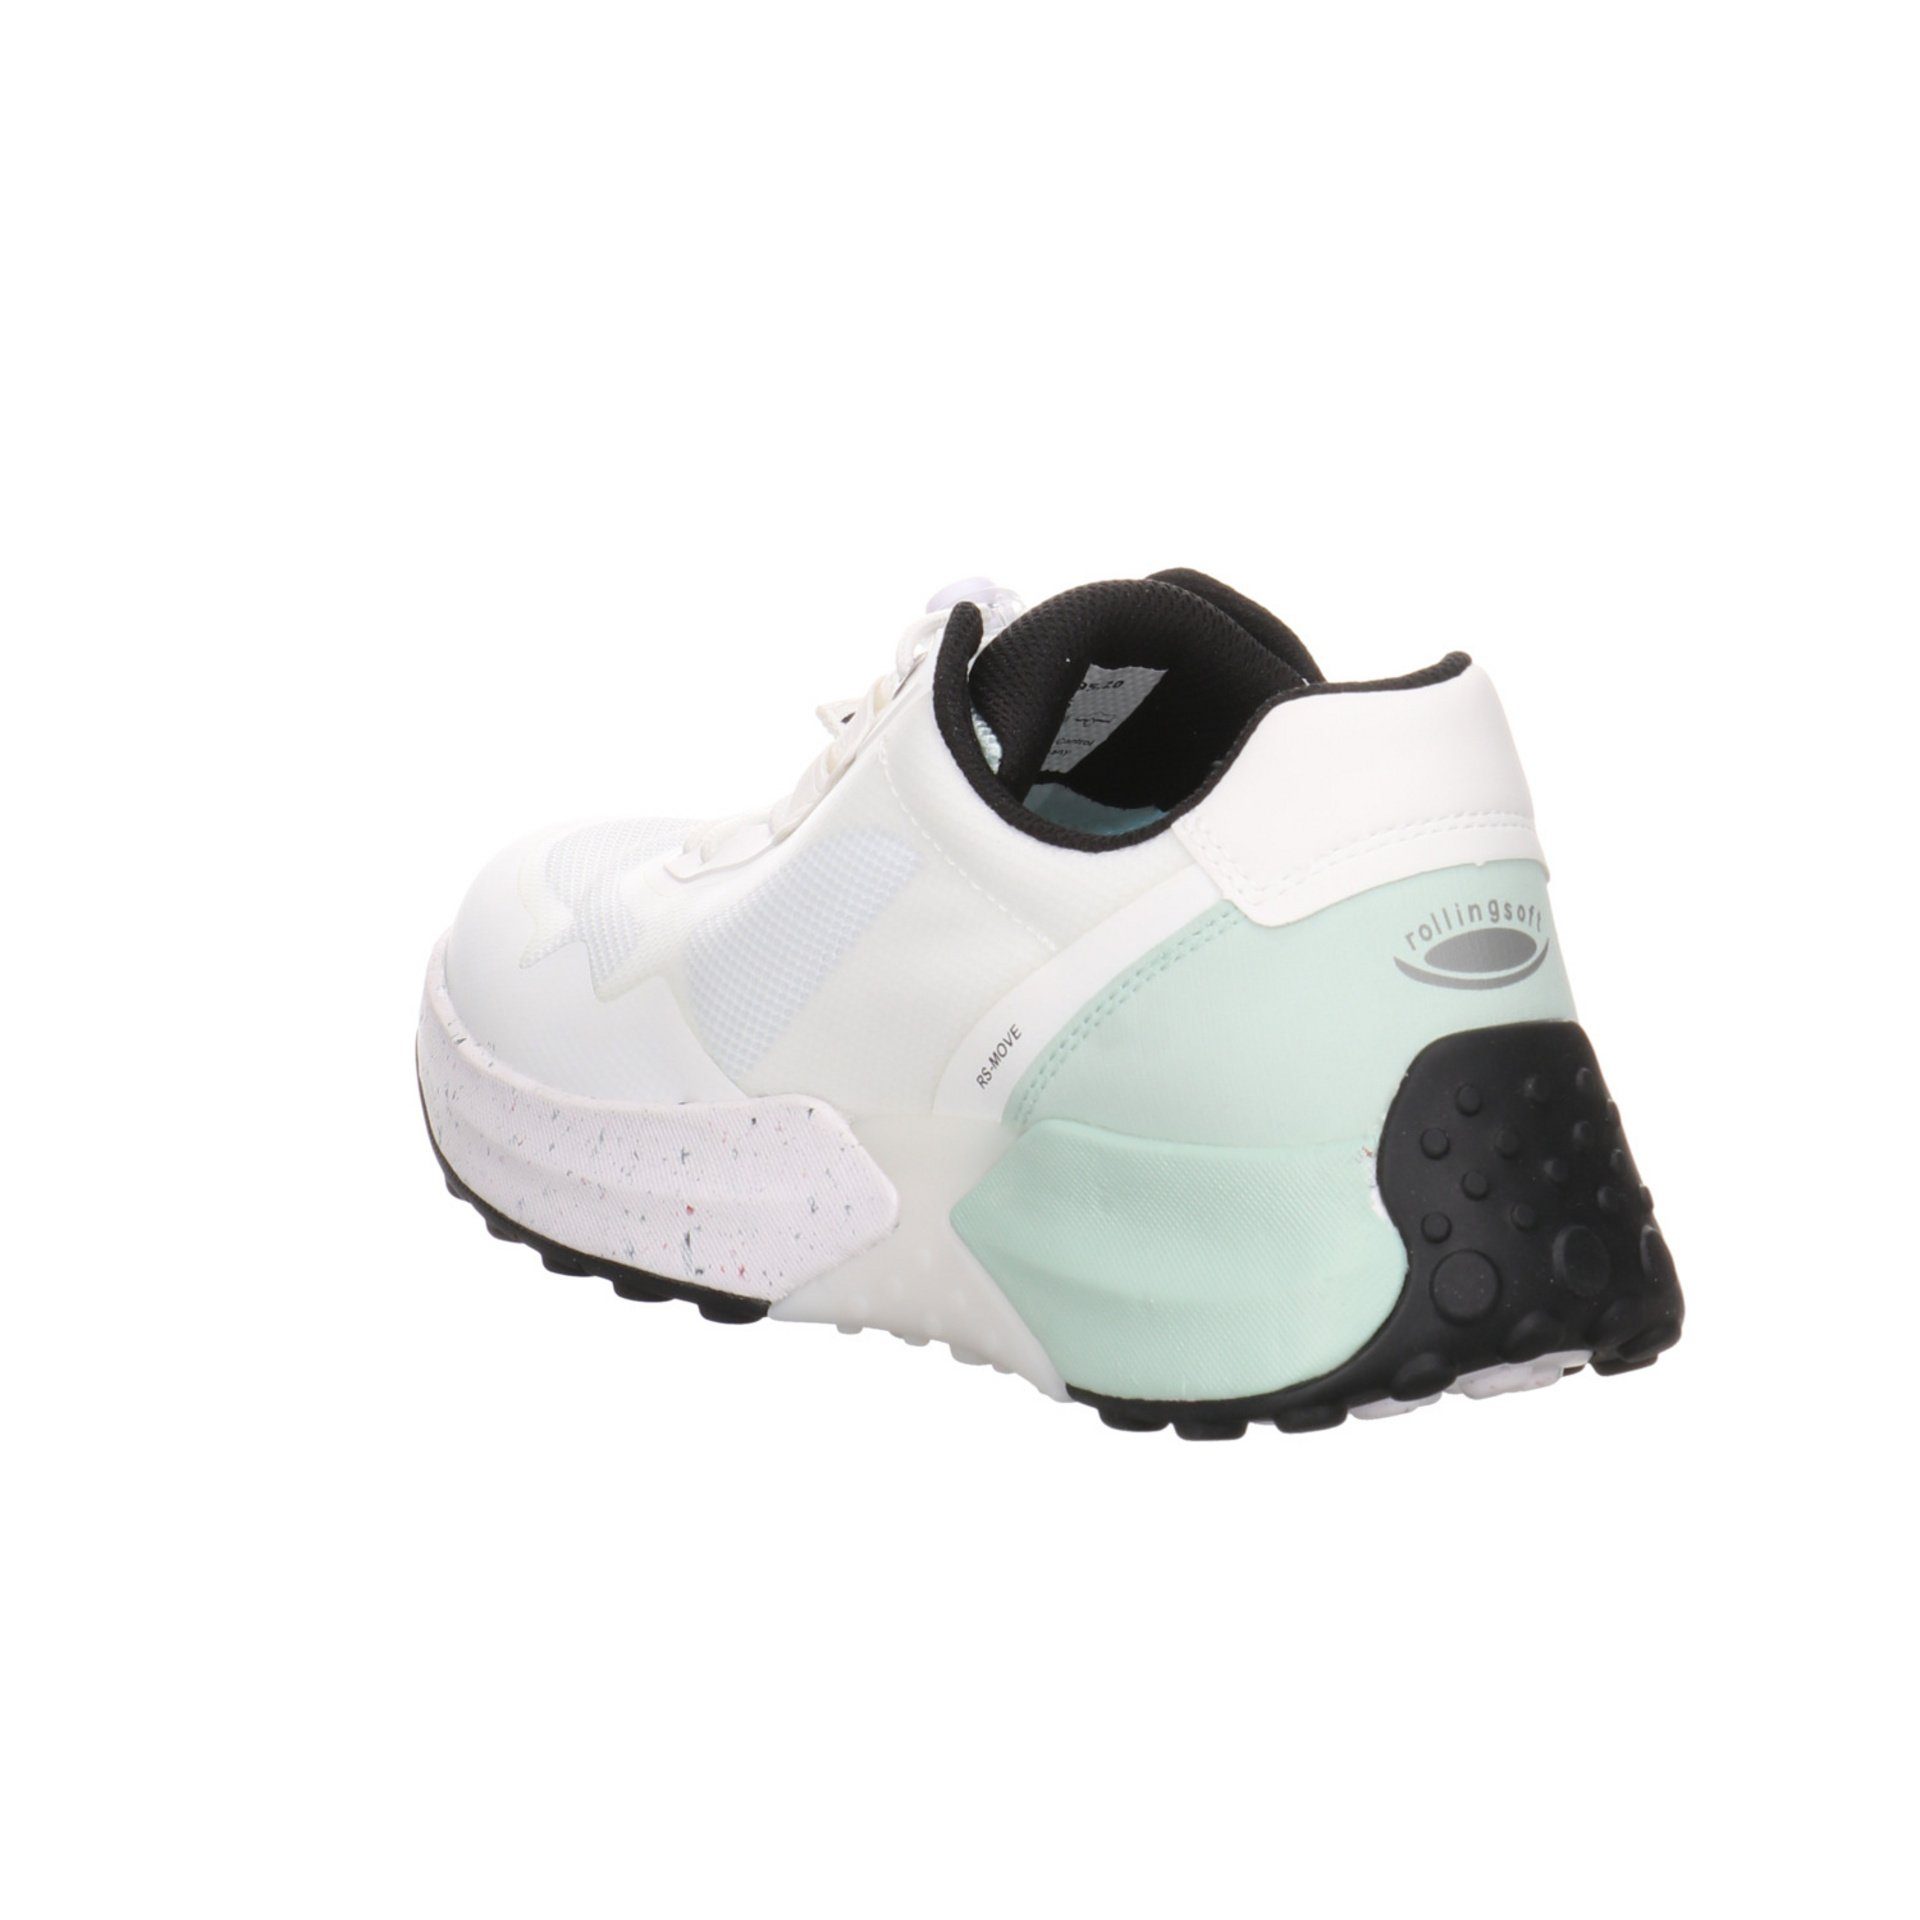 Gabor Damen Slipper Schuhe Rollingsoft Sneaker weiss/mint Slip-On Sneaker Synthetikkombination